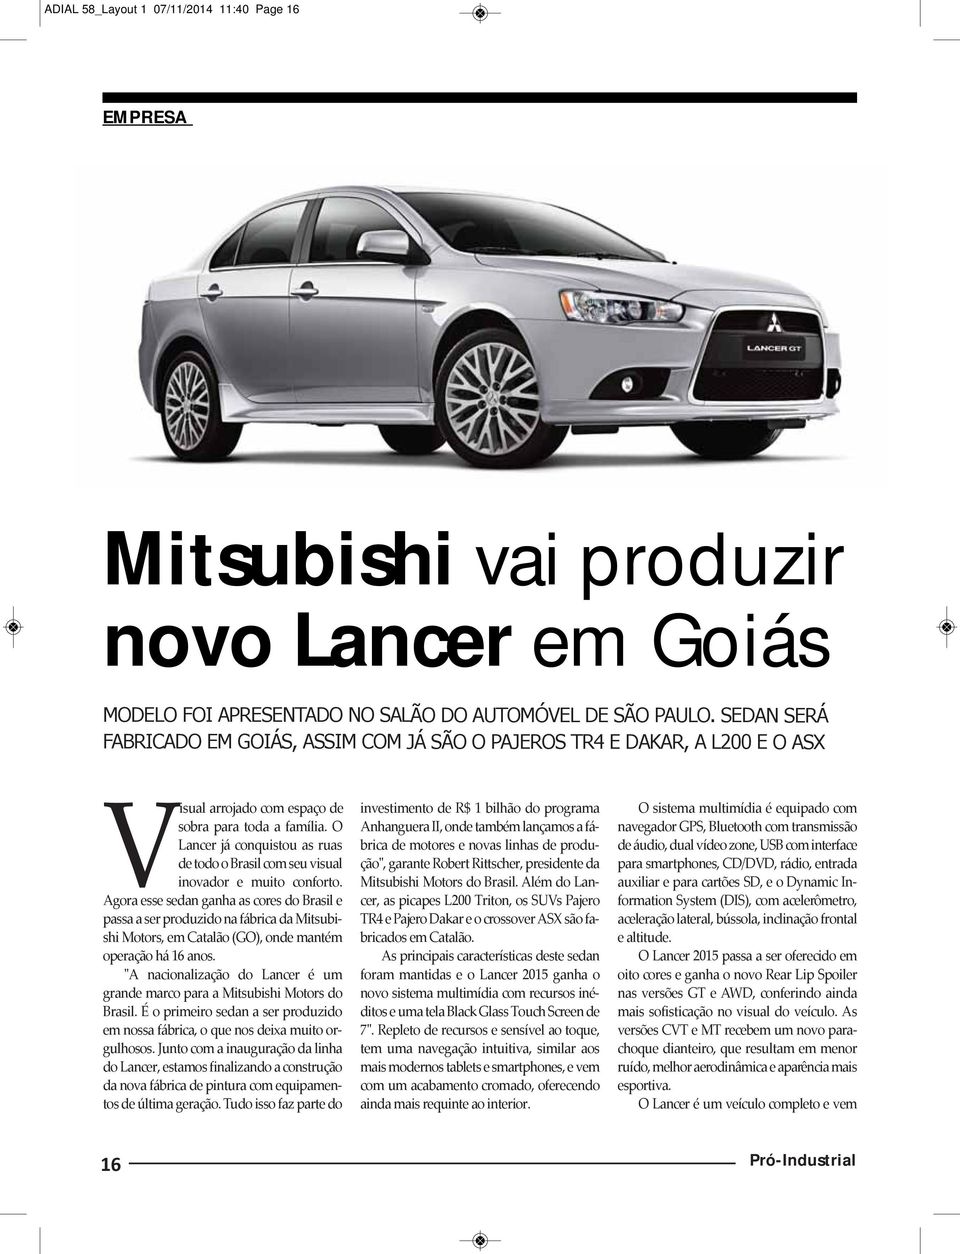 O Lancer já conquistou as ruas de todo o Brasil com seu visual inovador e muito conforto.